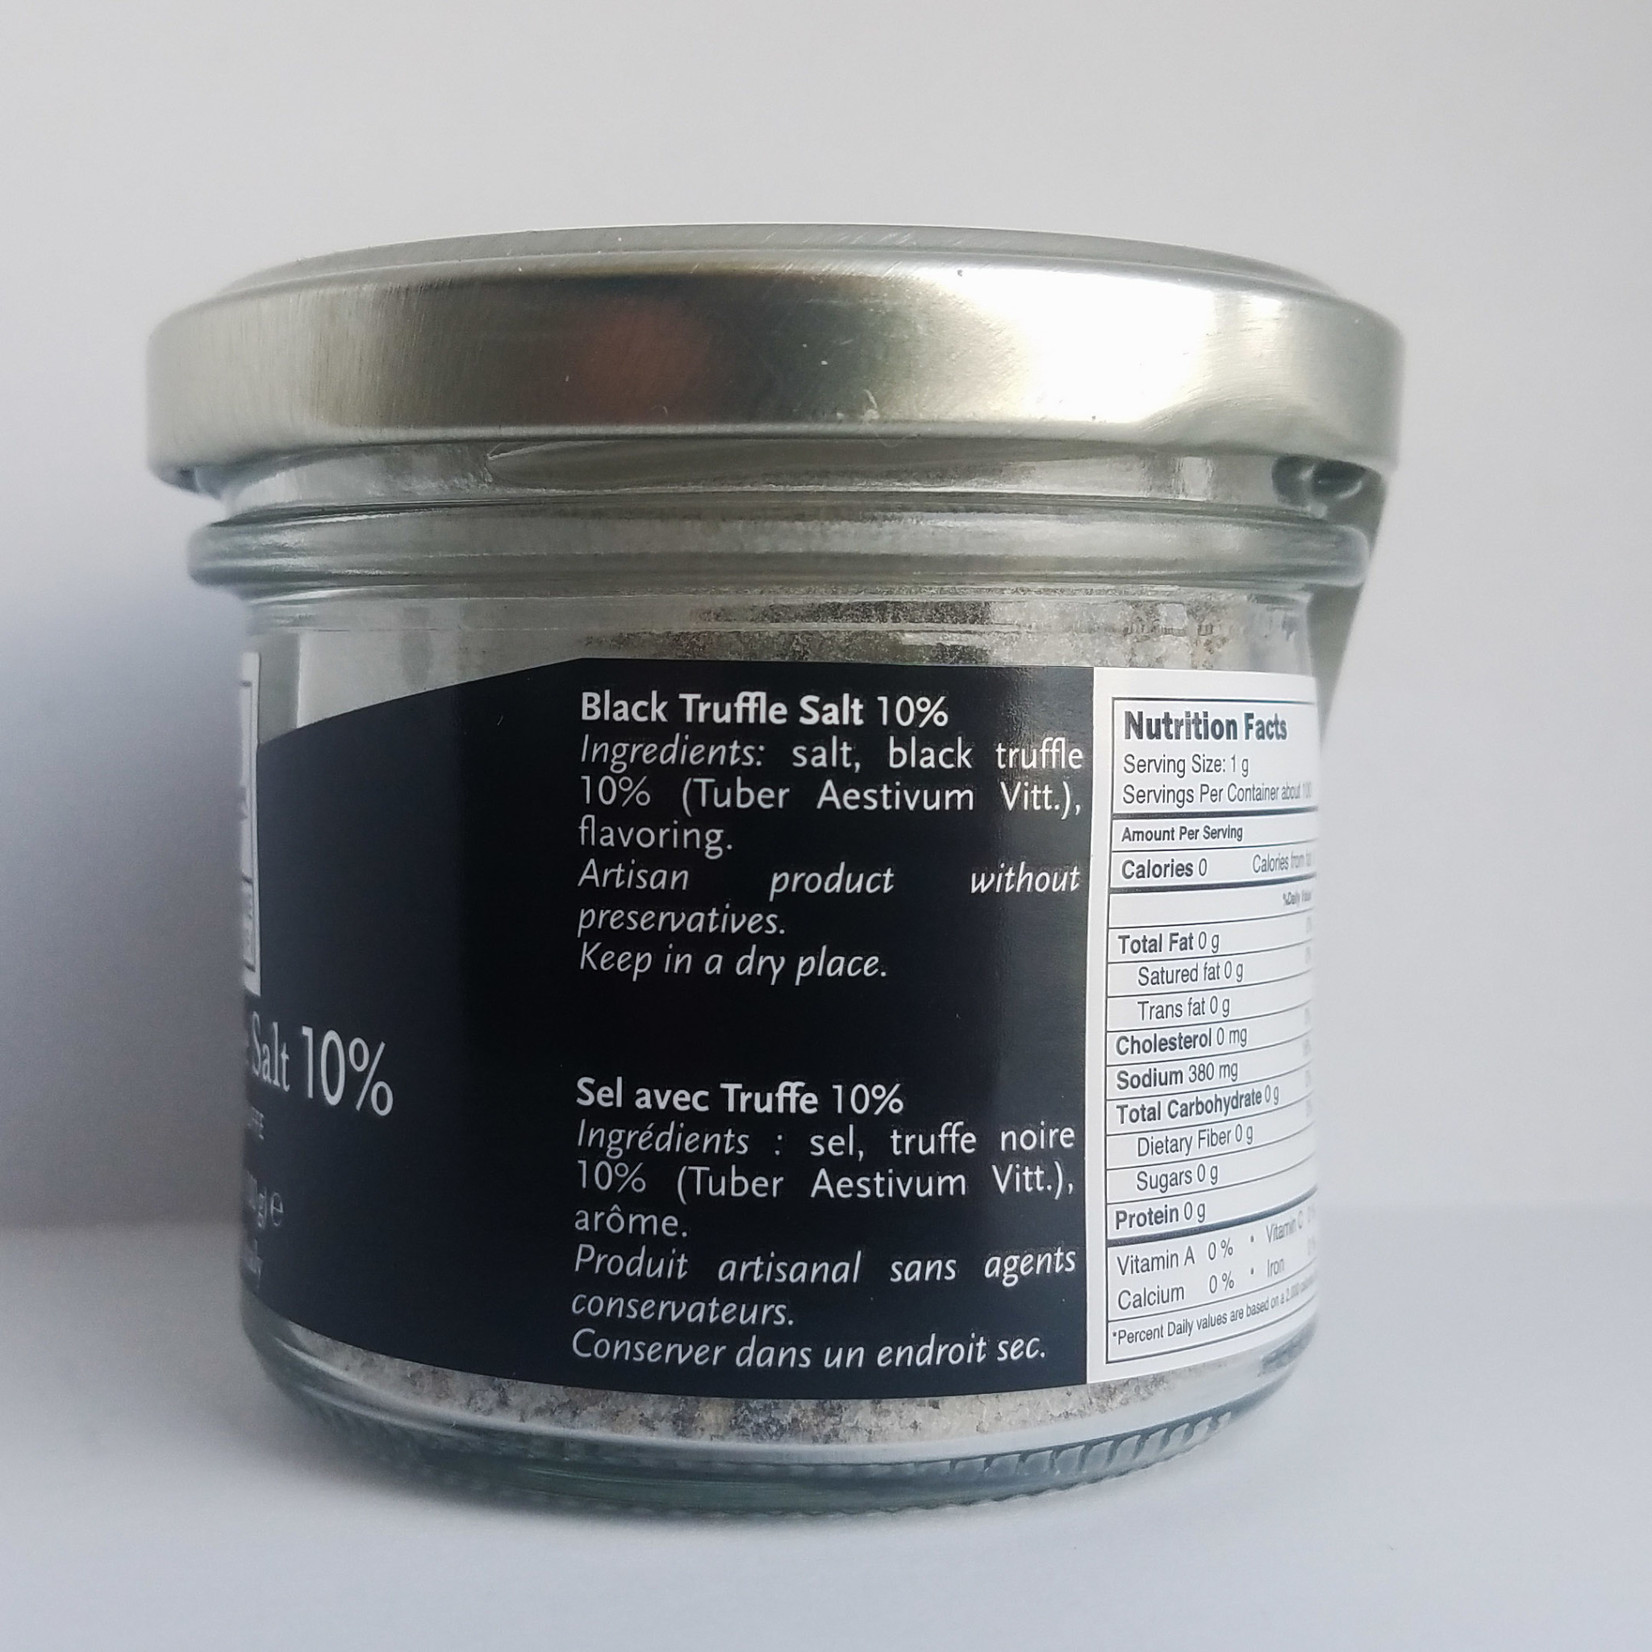 Great Ciao Truffle Salt, with 10% Black Truffle, Selezione Tartufi, Italy, 100g